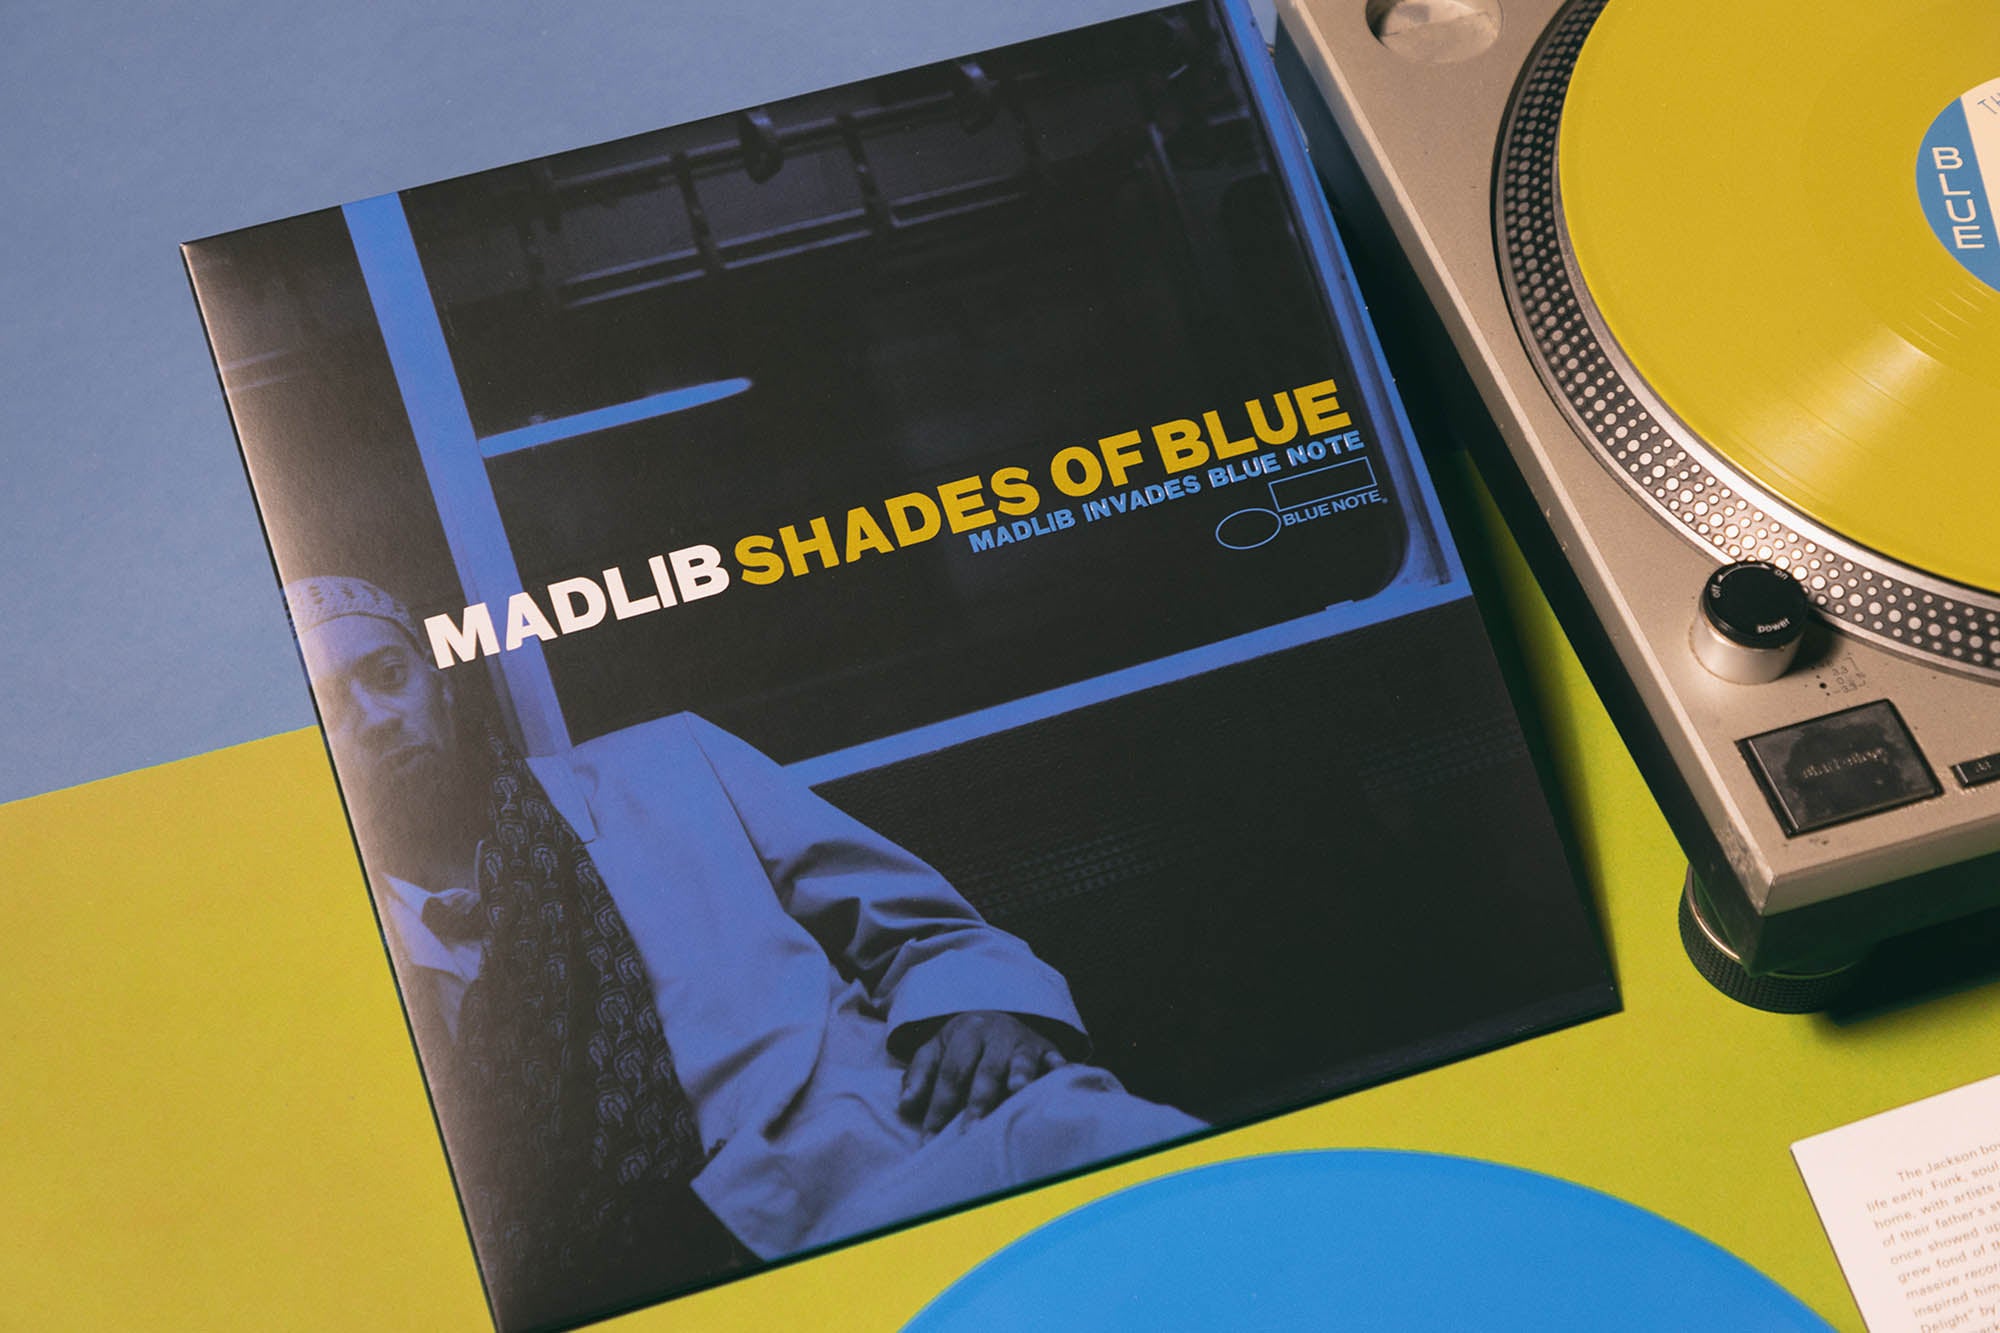 Madlib 'Shades of Blue' - Vinyl Me, Please